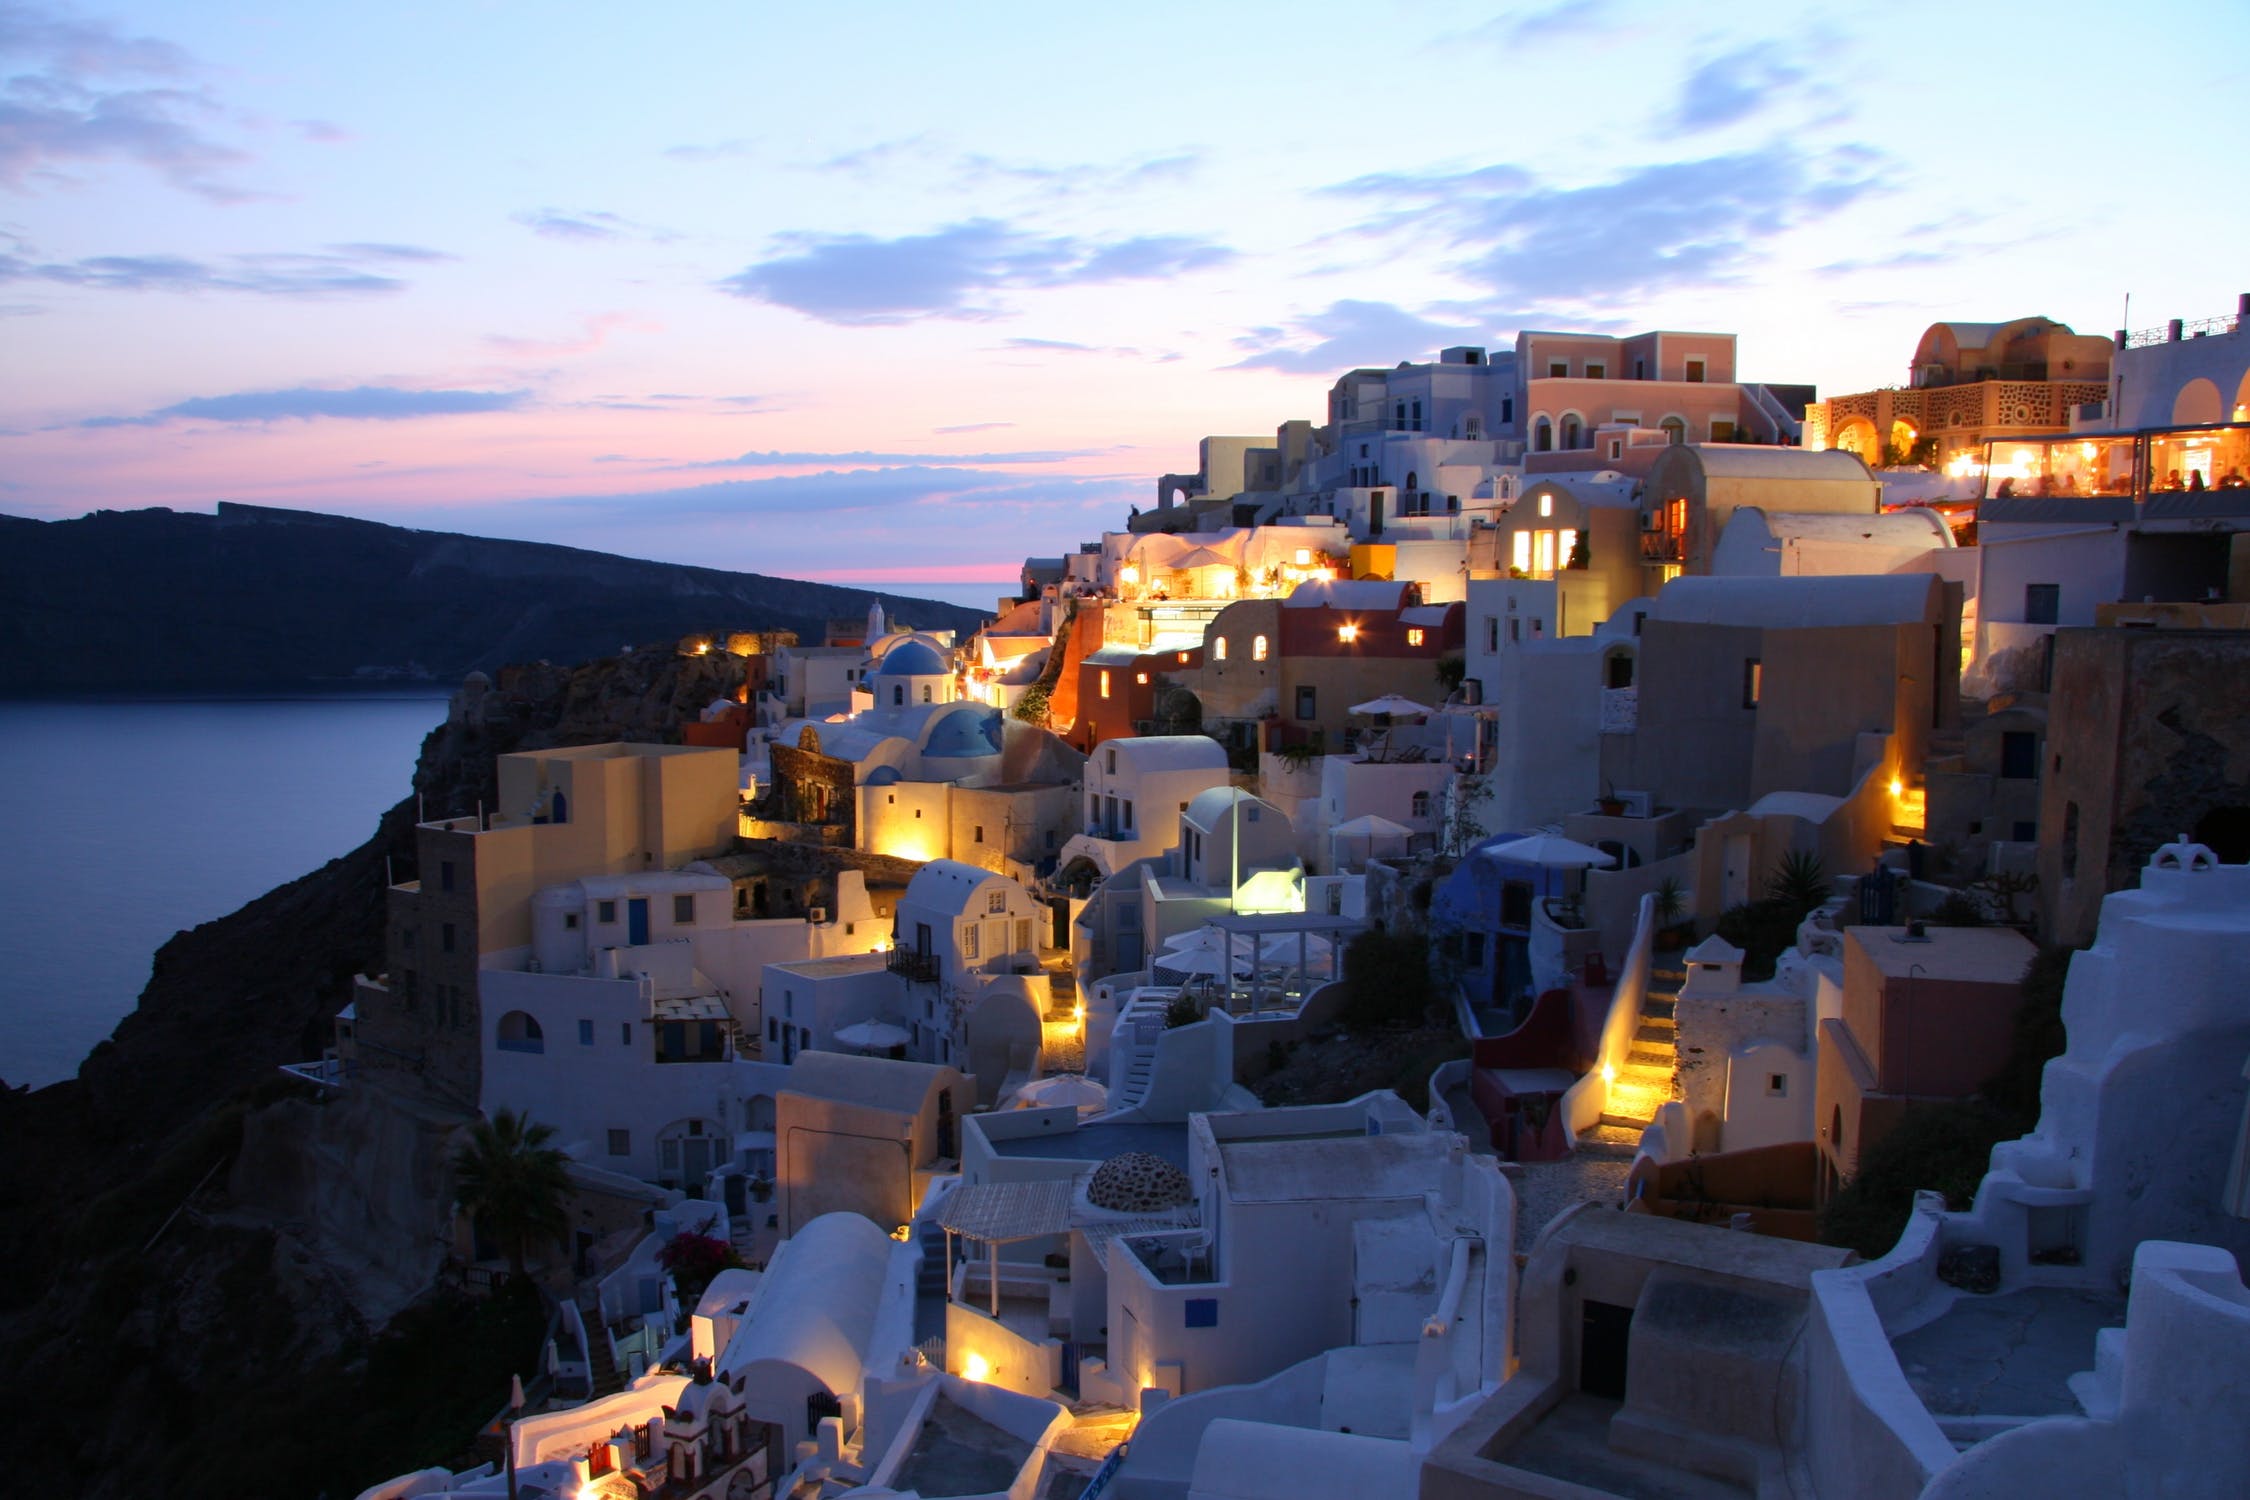 Artan Tatil Evi Talebi Yunan Gayrimenkul Piyasasını Güçlendiriyor